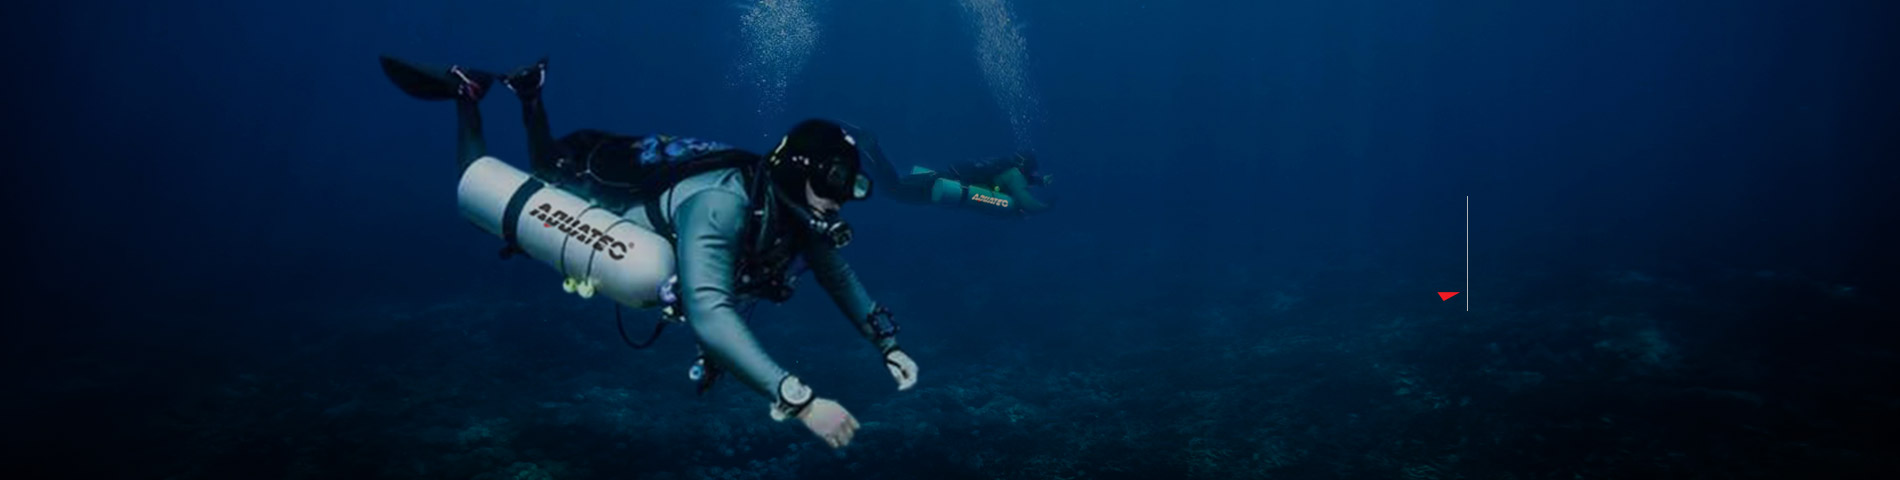 Discover AQUATEC Professional scuba diving equipment